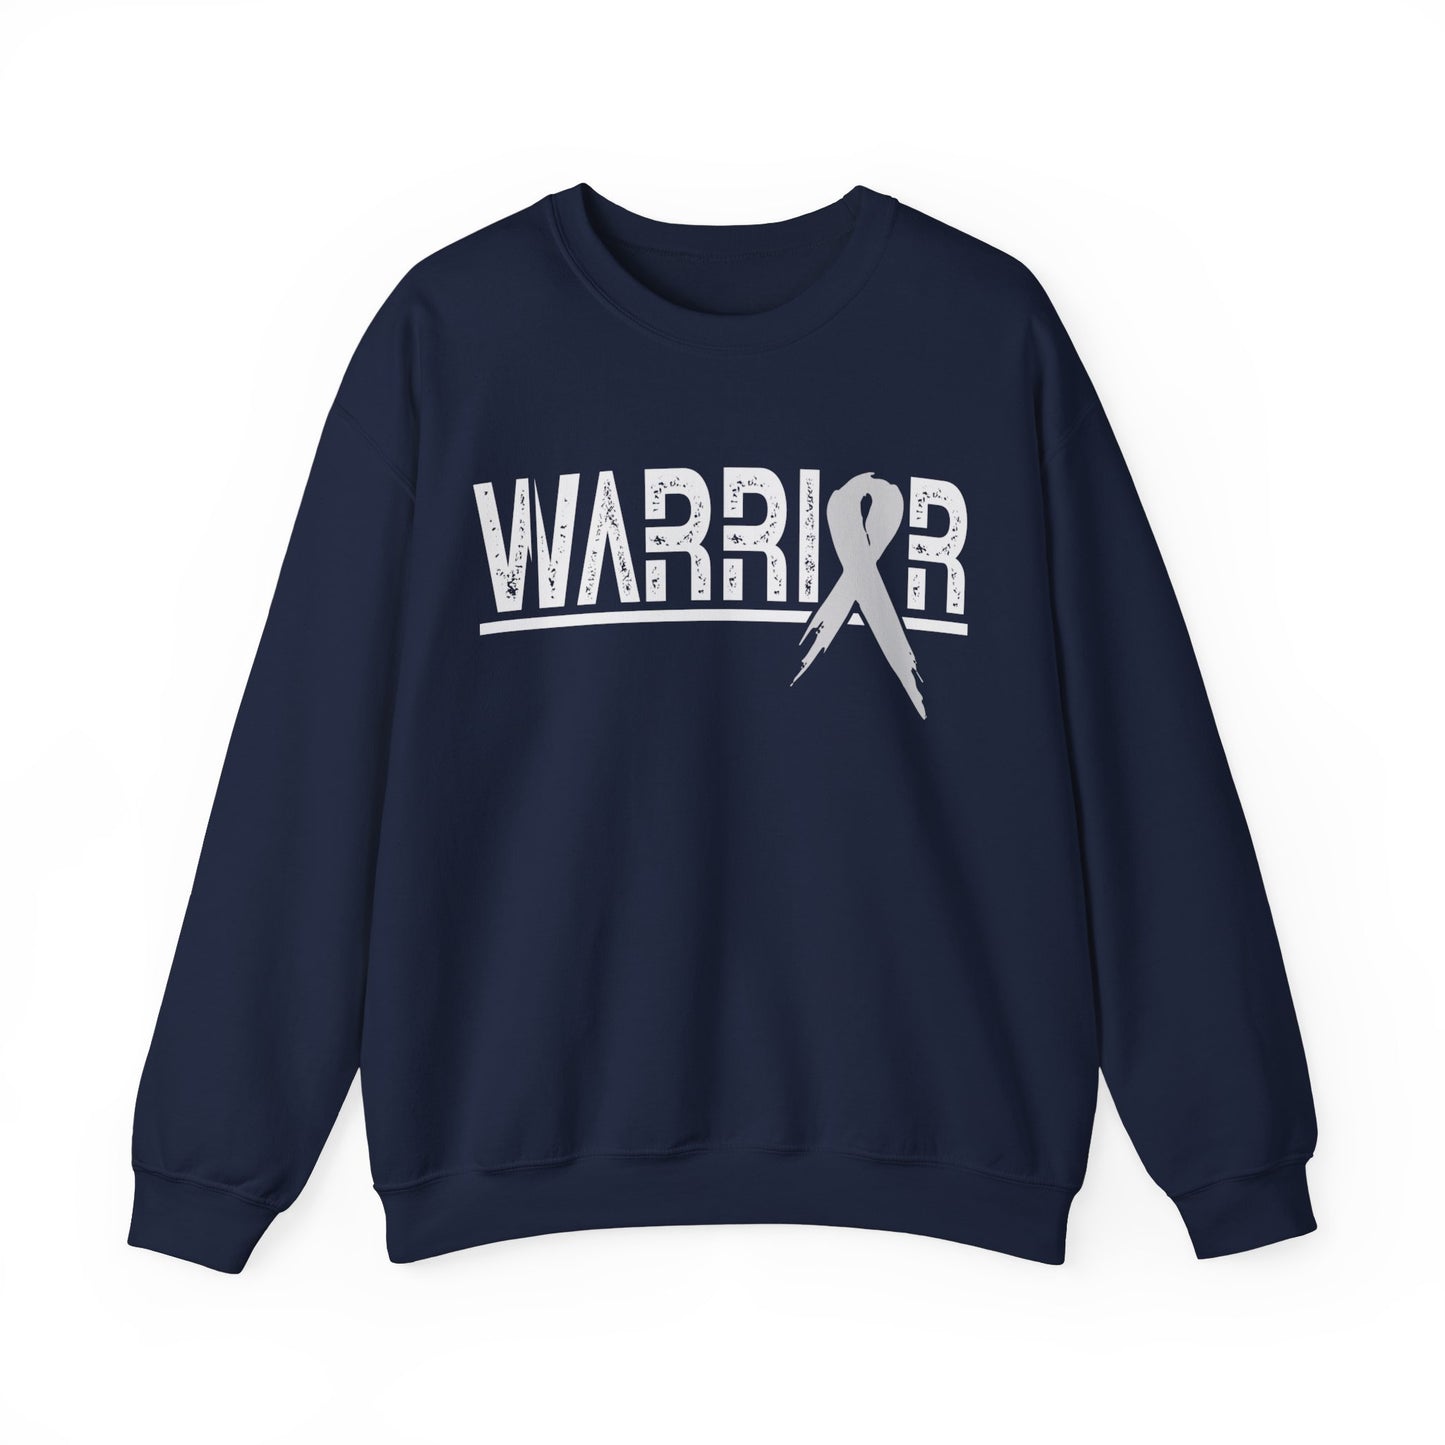 Cancer Warrior Sweatshirt Adult Unisex